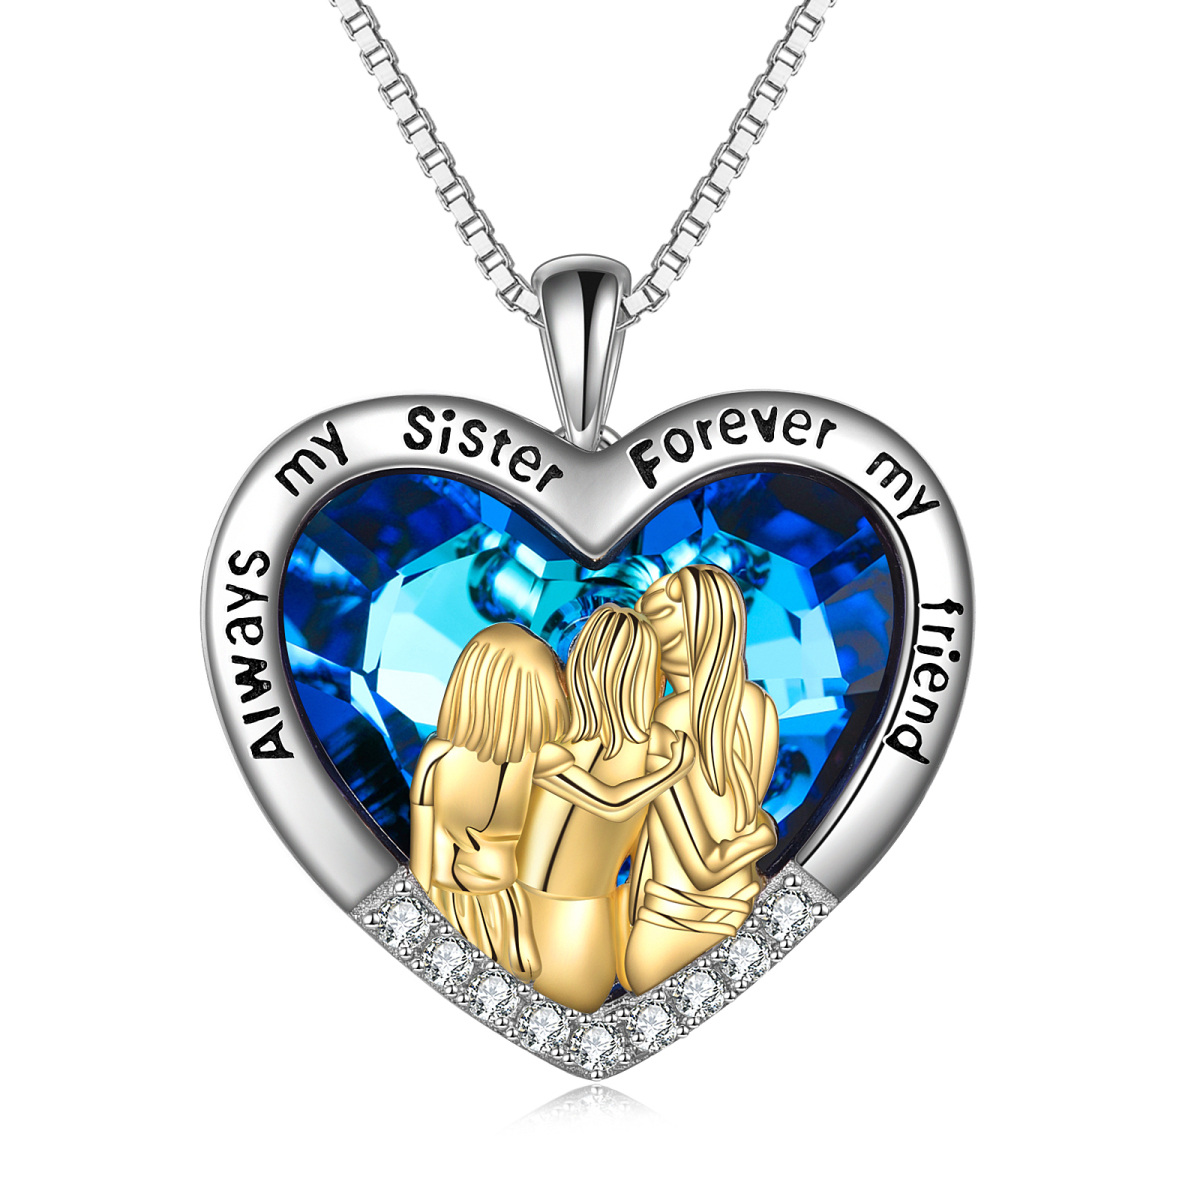 Zweifarbige Halskette mit Herzanhänger „Crystal Sisters“ aus Sterlingsilber mit eingraviertem Wort-1